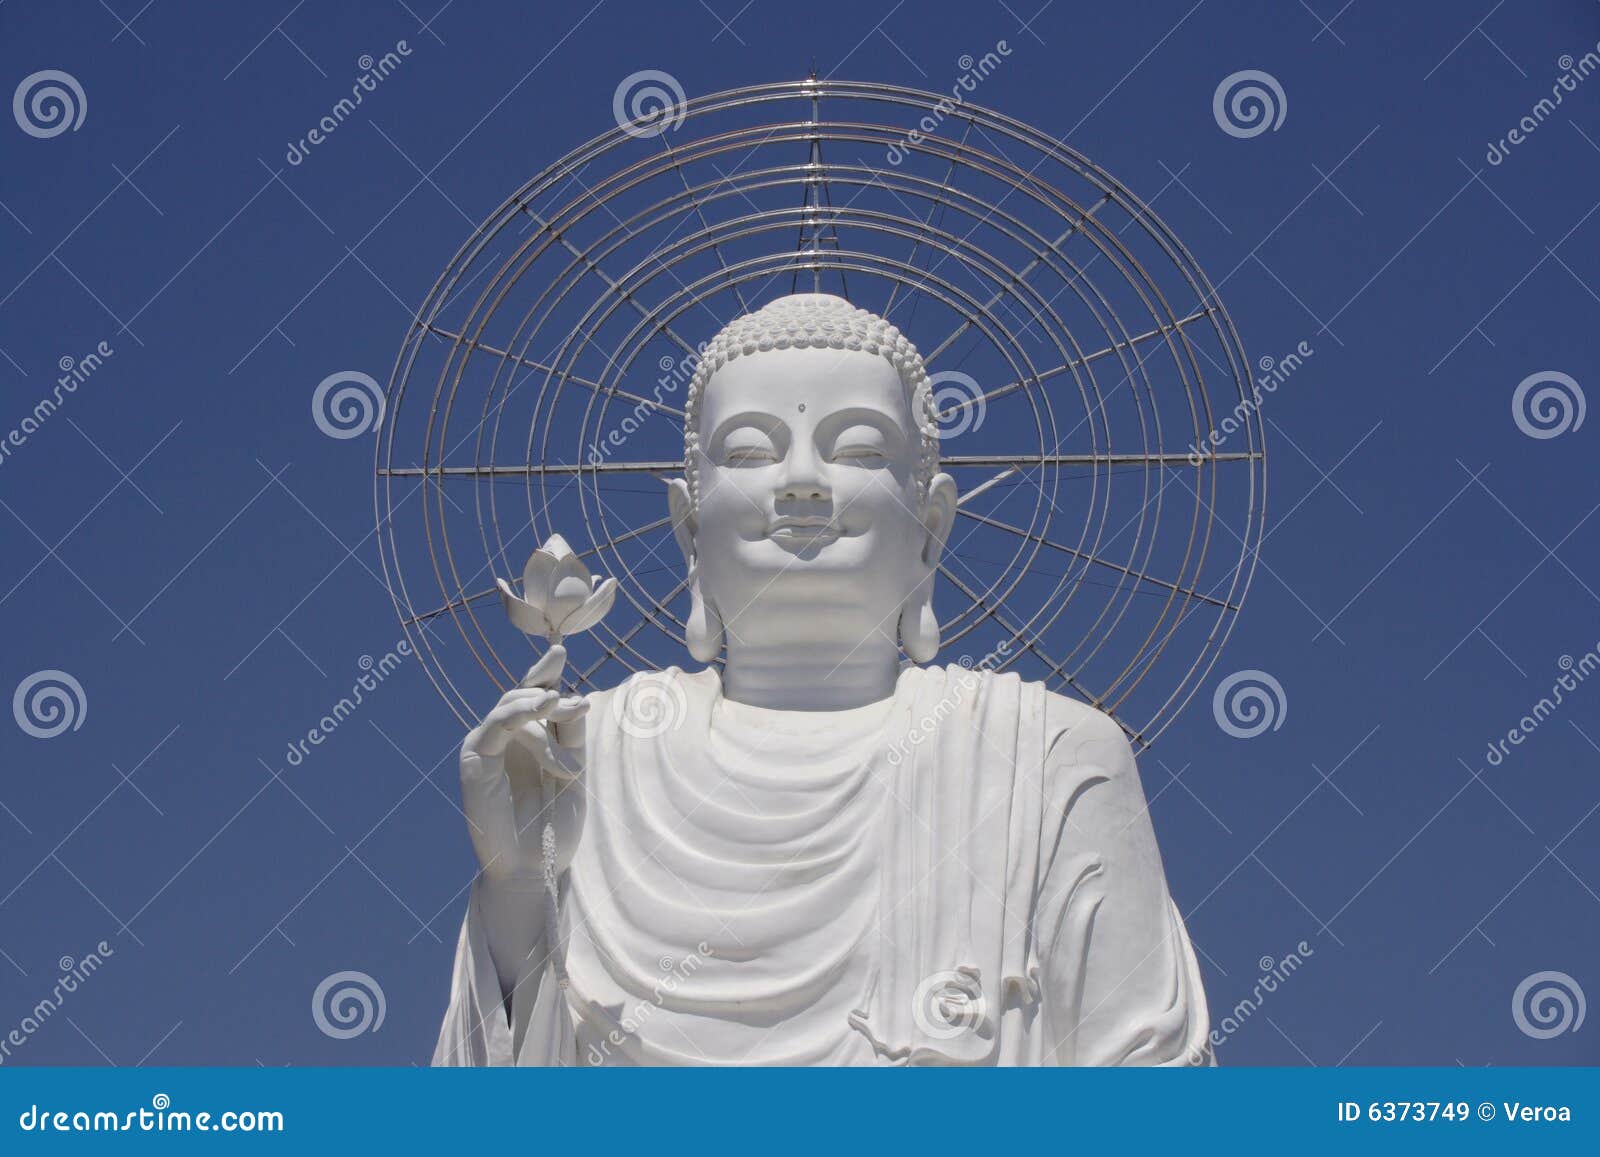 White Buddha Statue Stock Photography | CartoonDealer.com #76443992